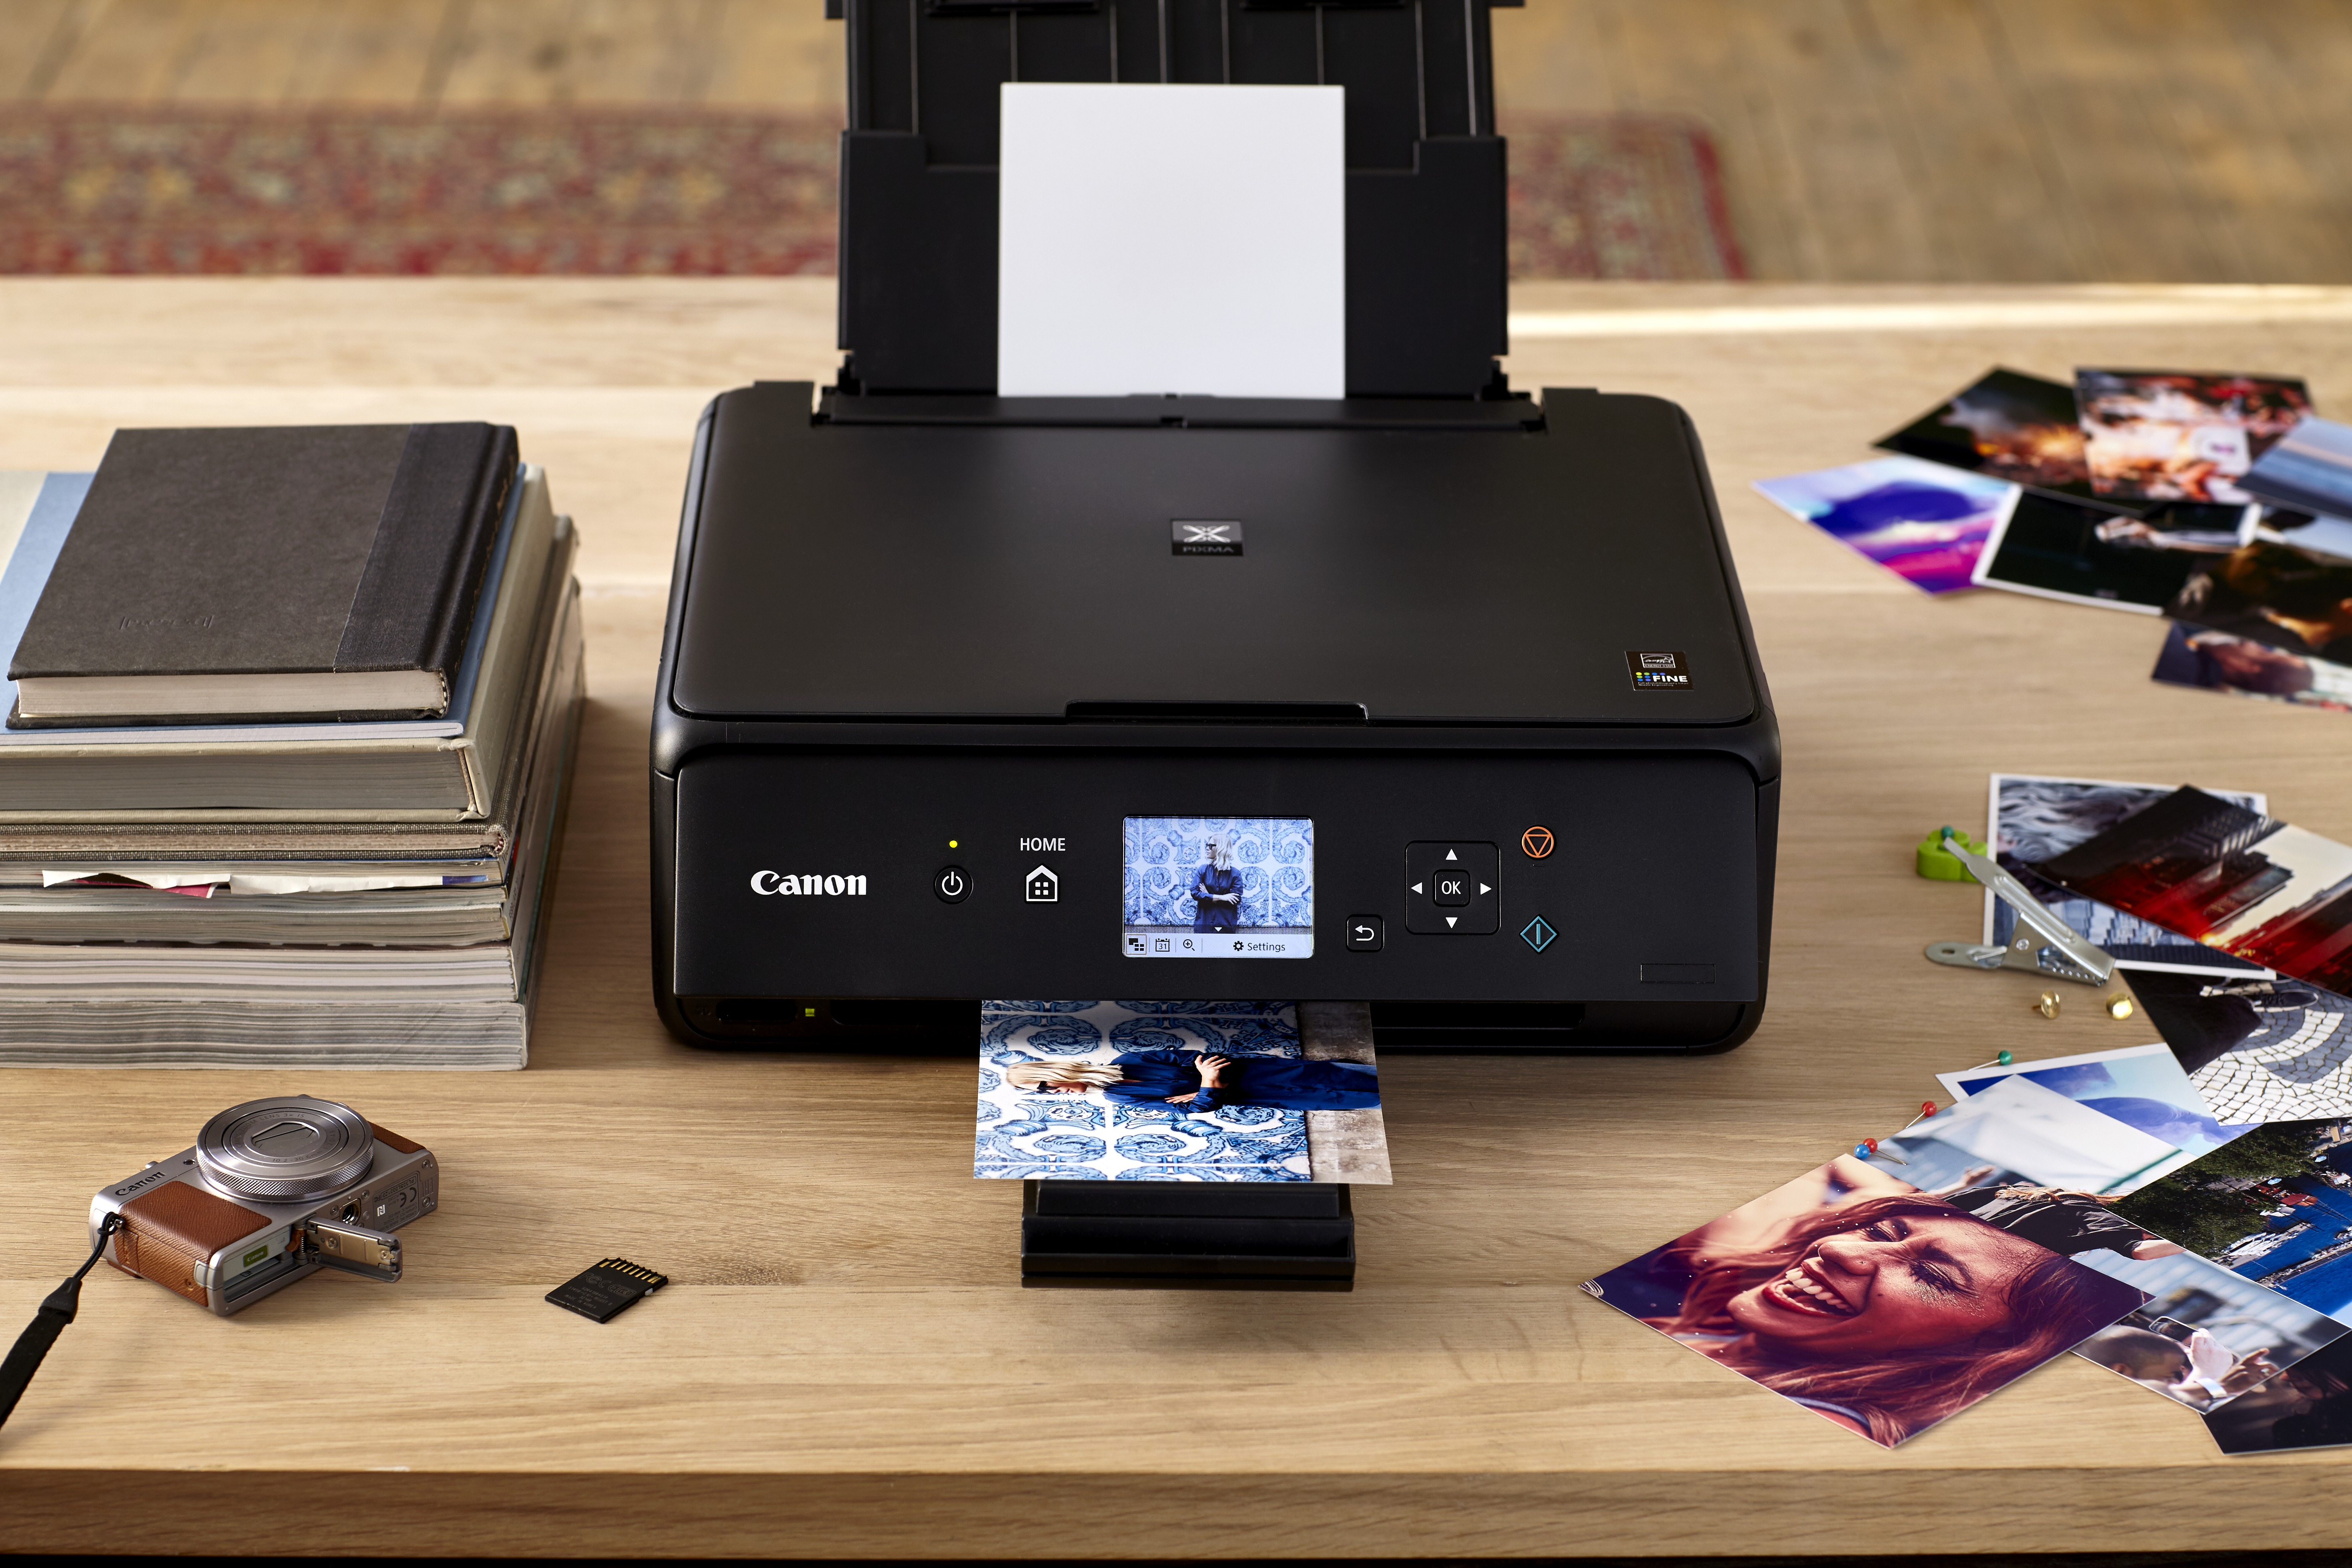 струйный принтер для печати фотографий дома